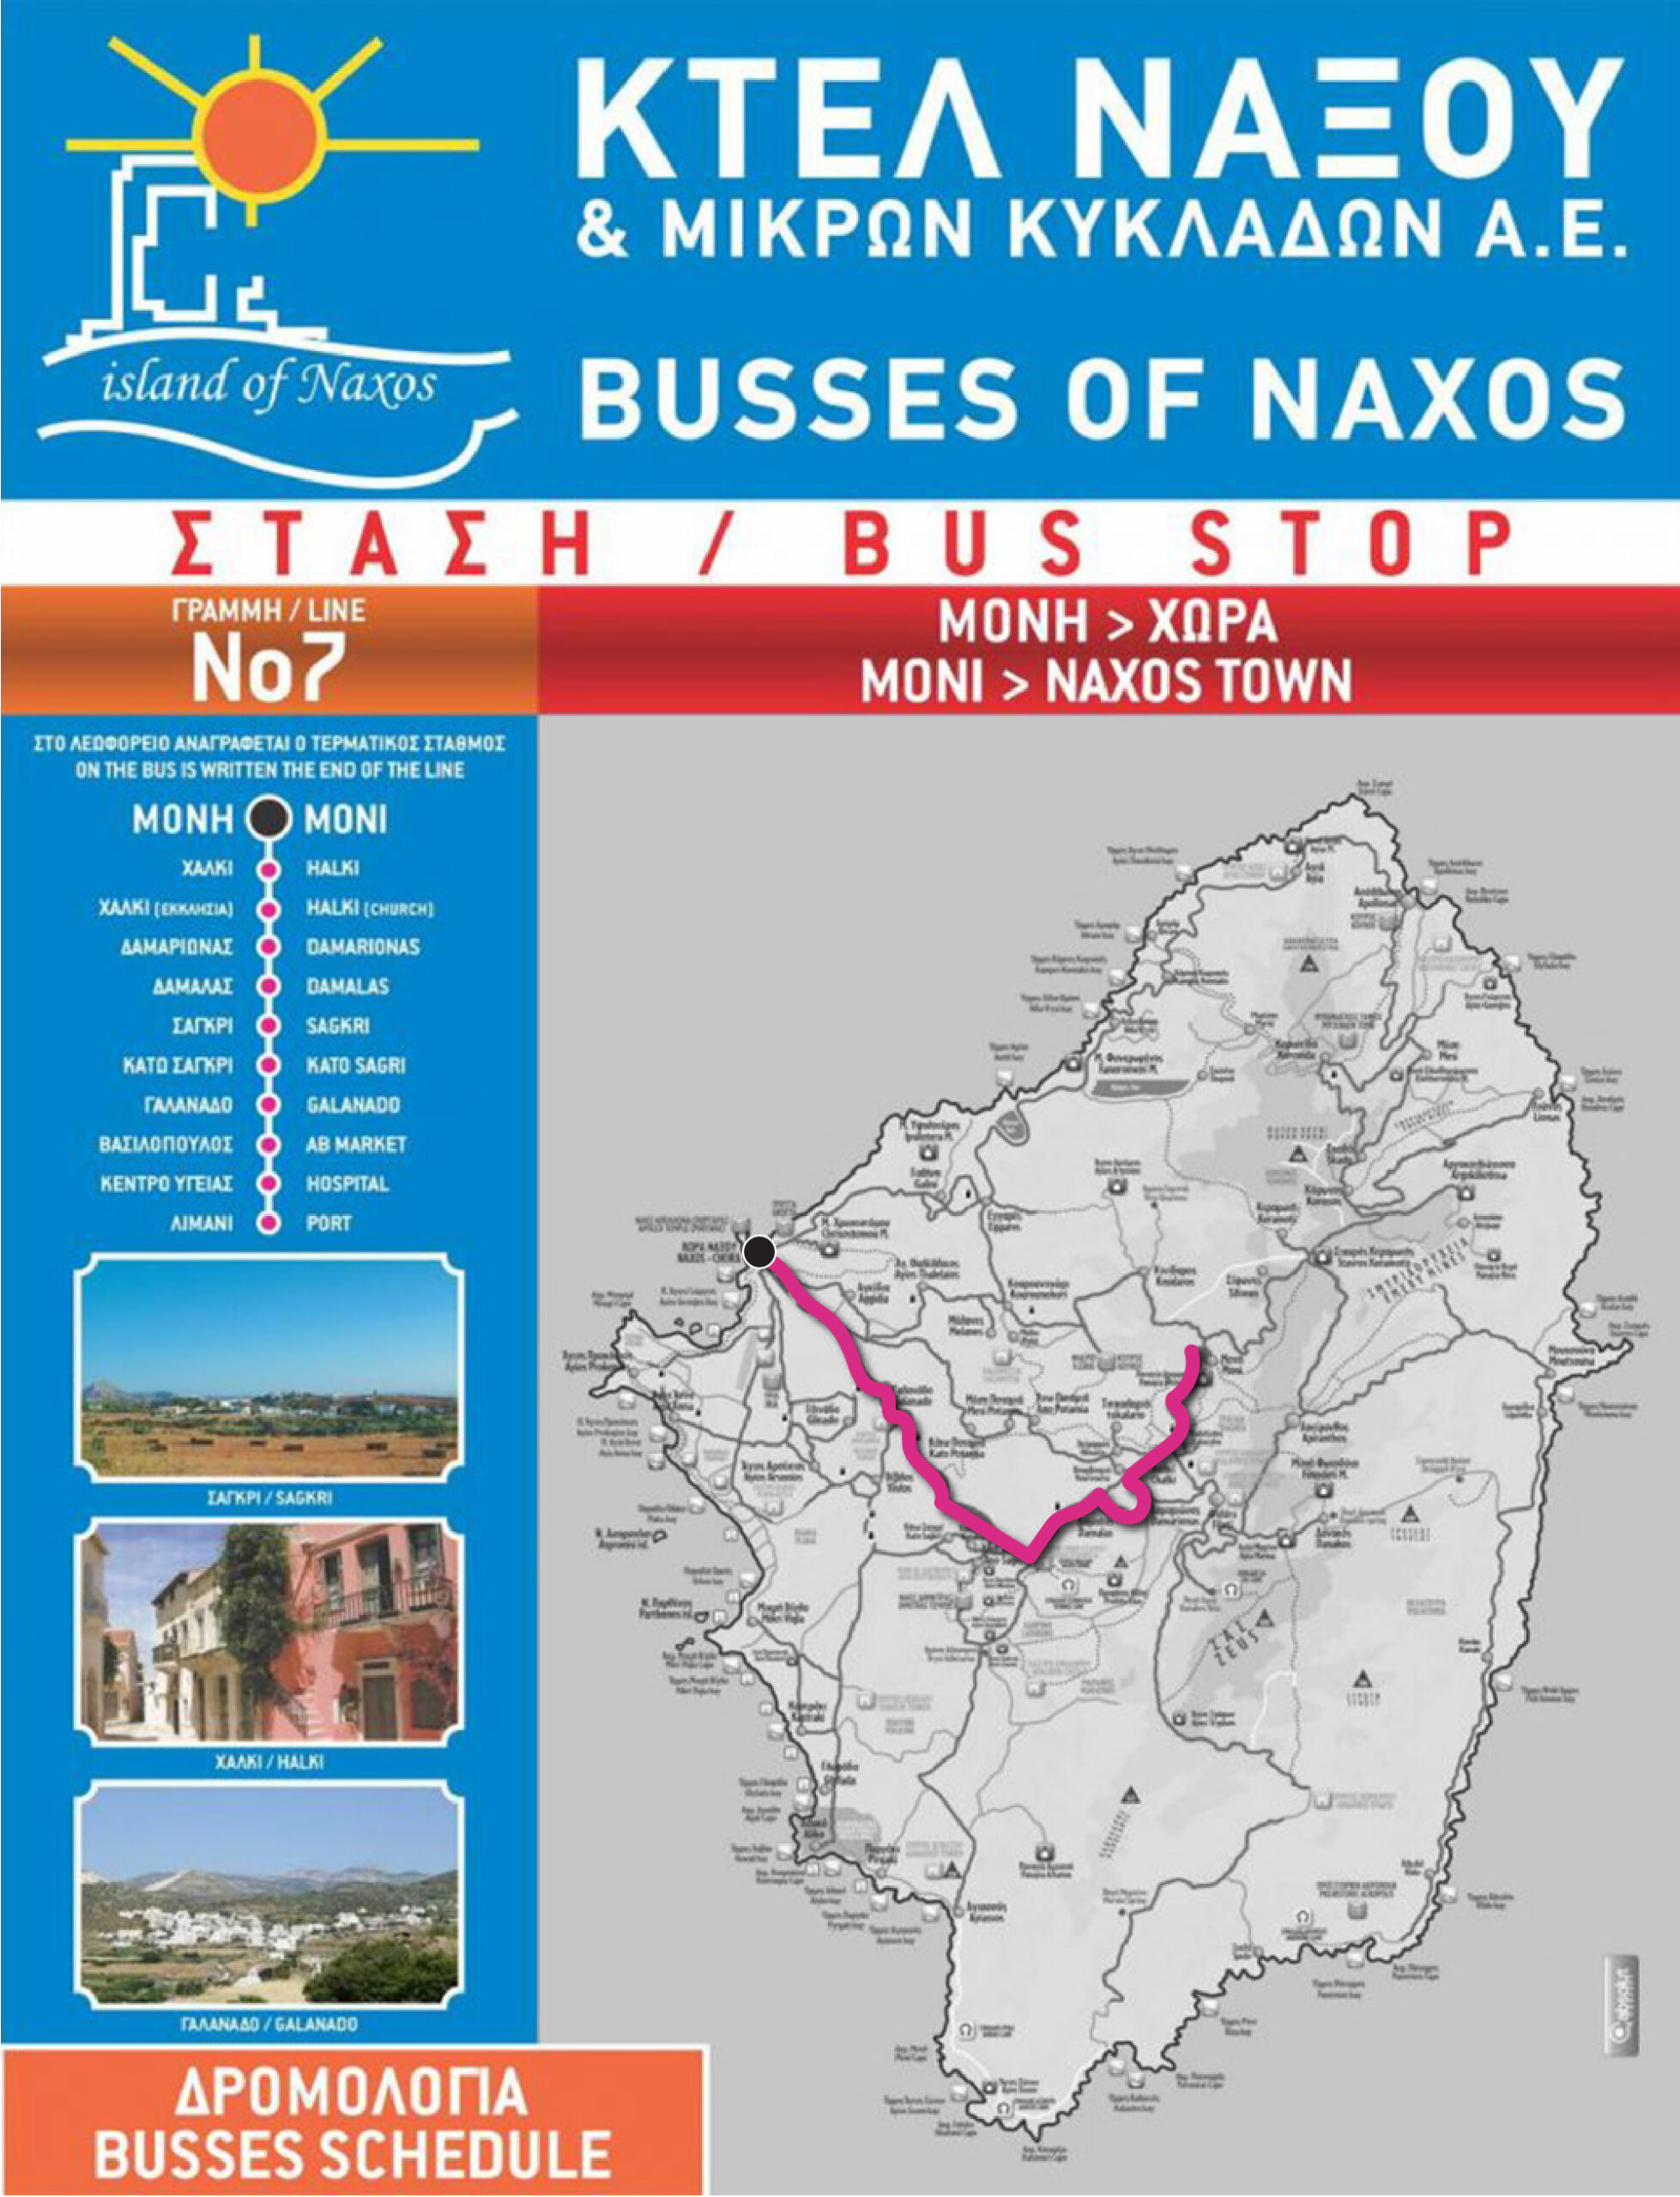 Naxos bus route #7.